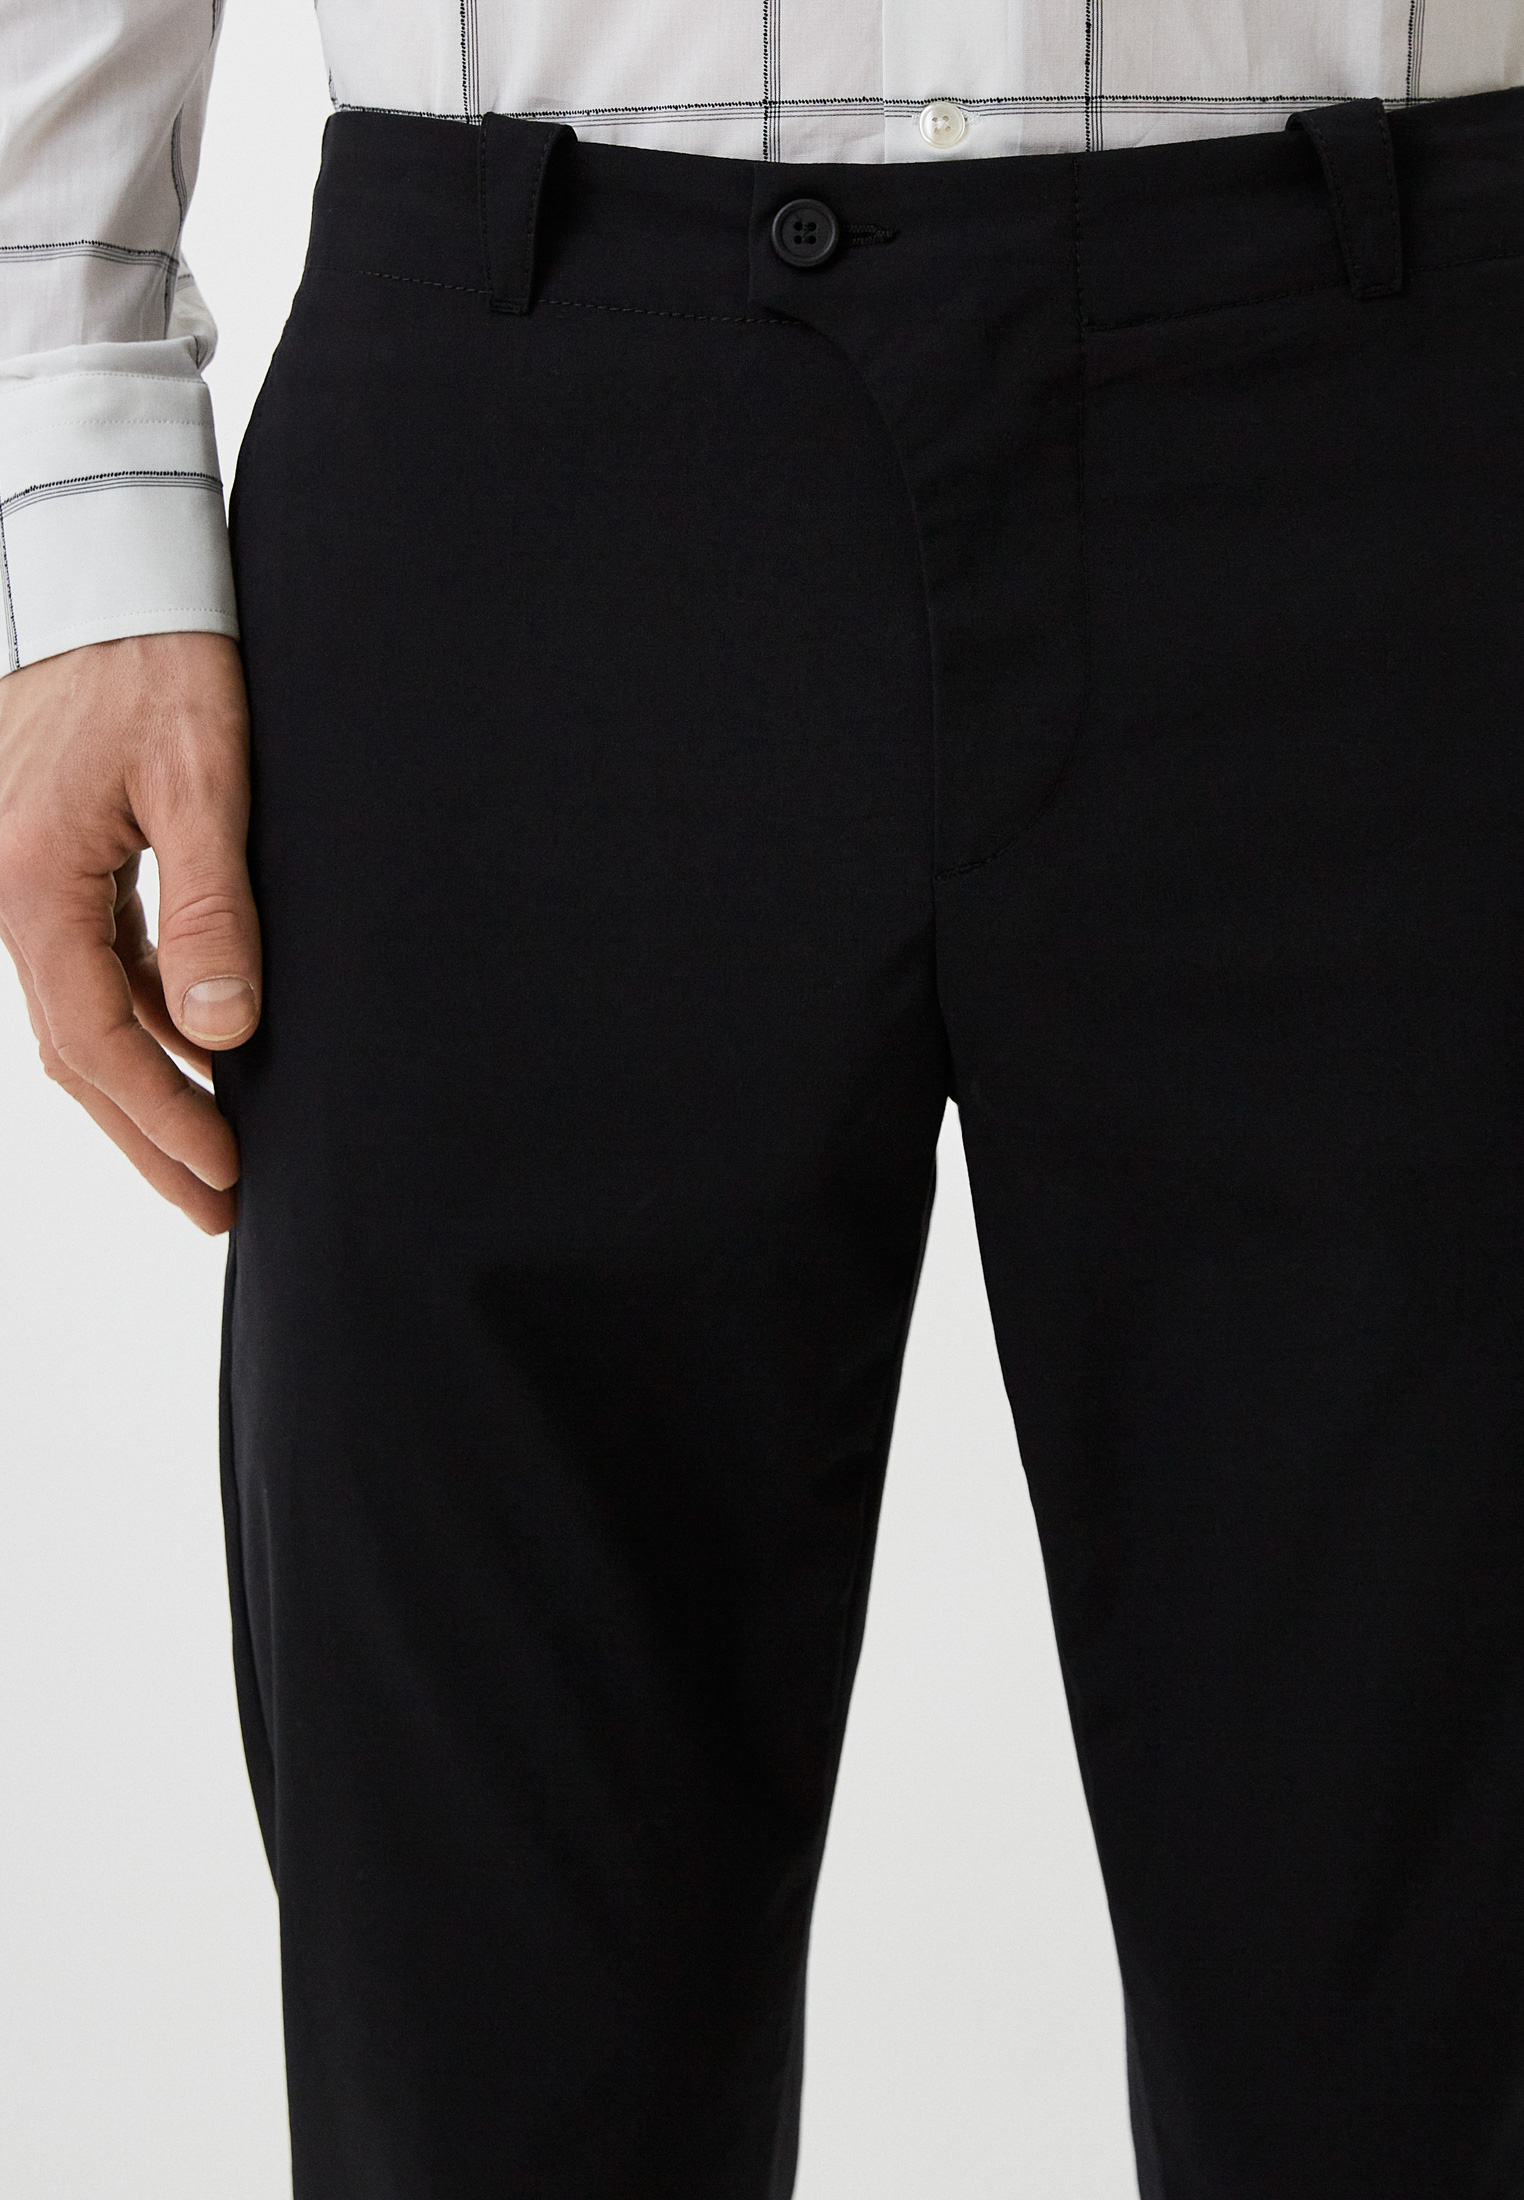 Мужские классические брюки Bikkembergs (Биккембергс) C P 060 00 S 3415: изображение 4